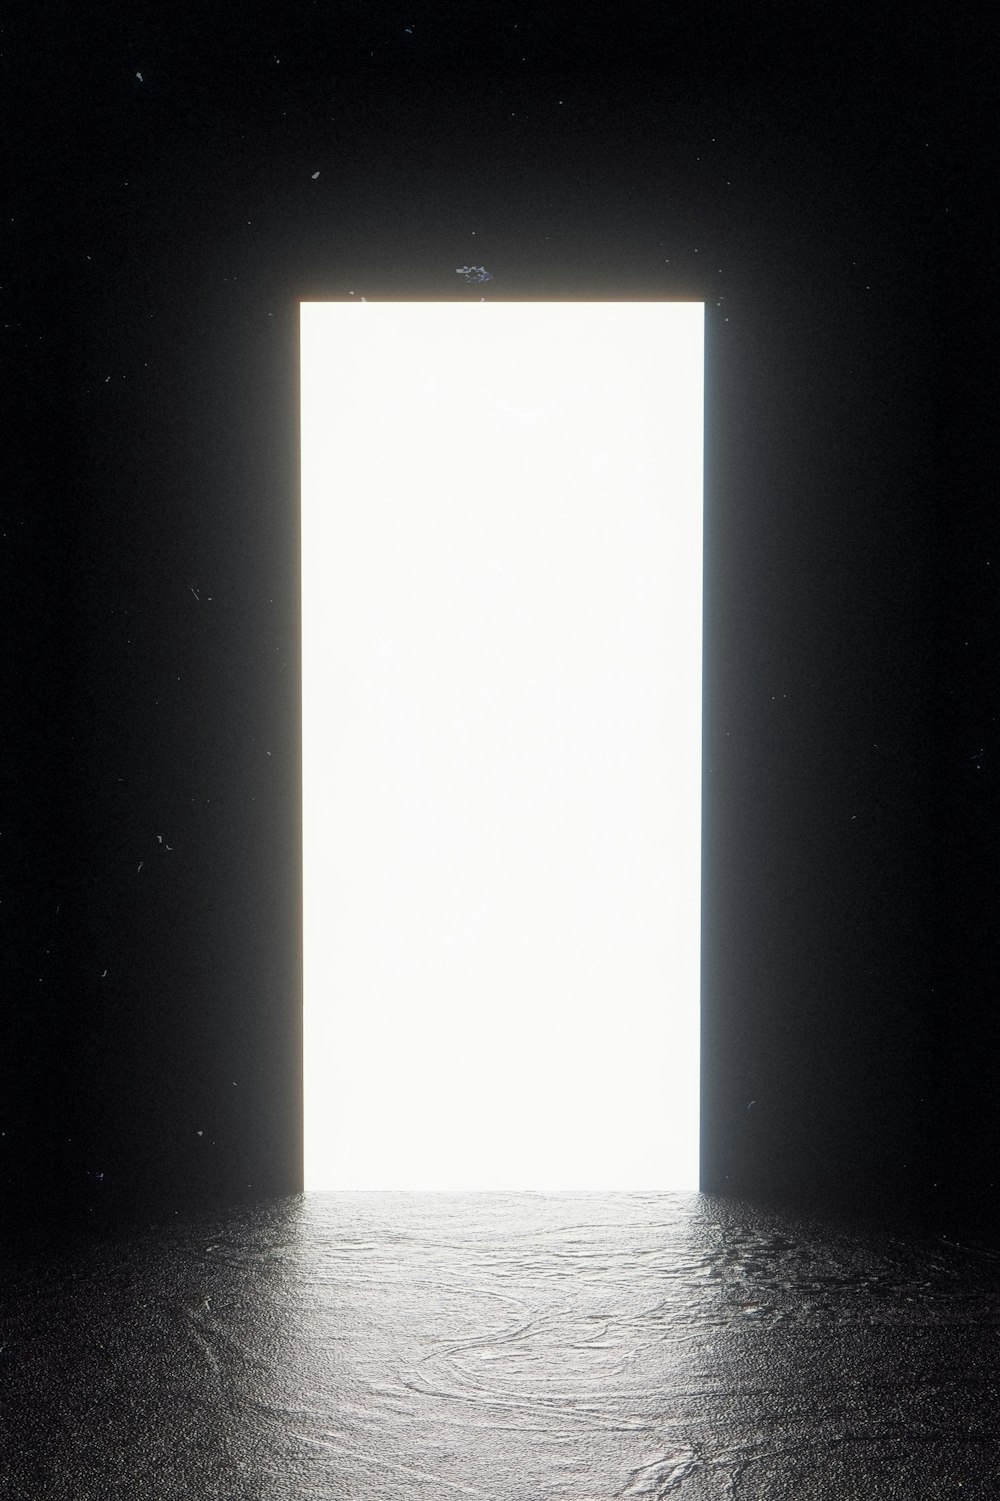 a large open door in a dark room